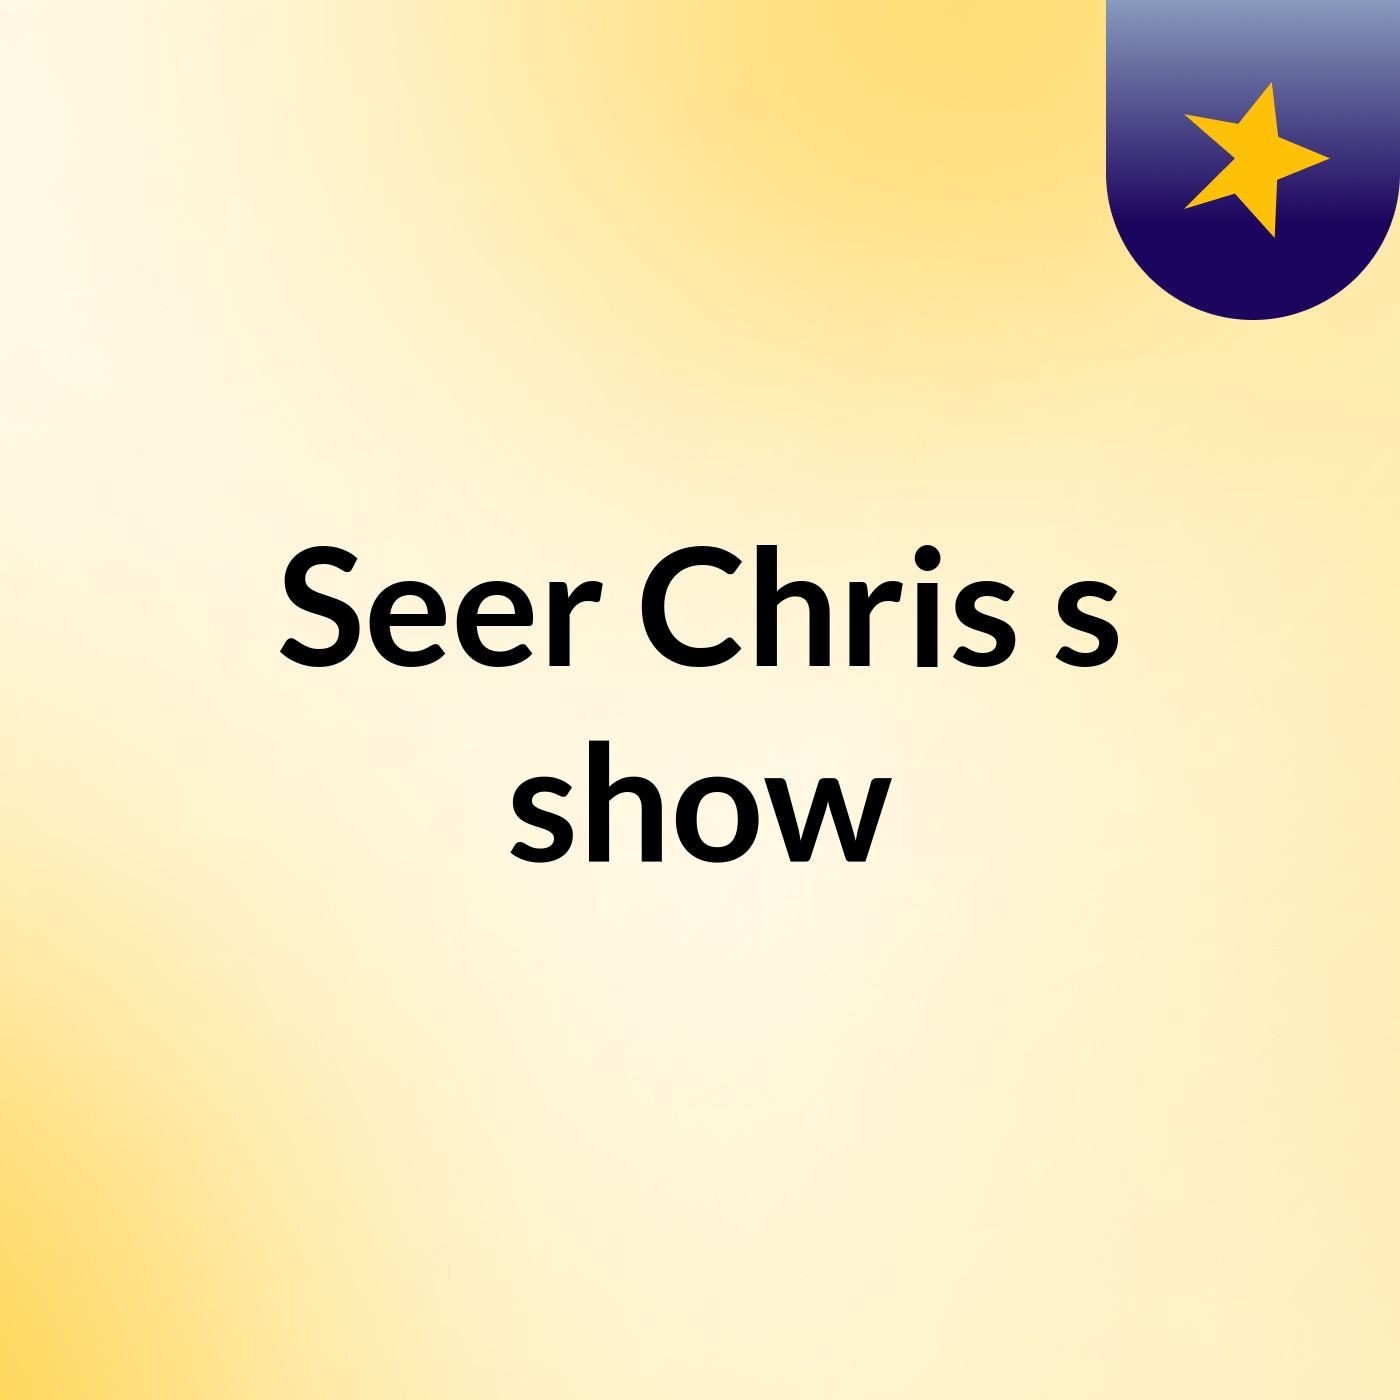 Seer Chris's show